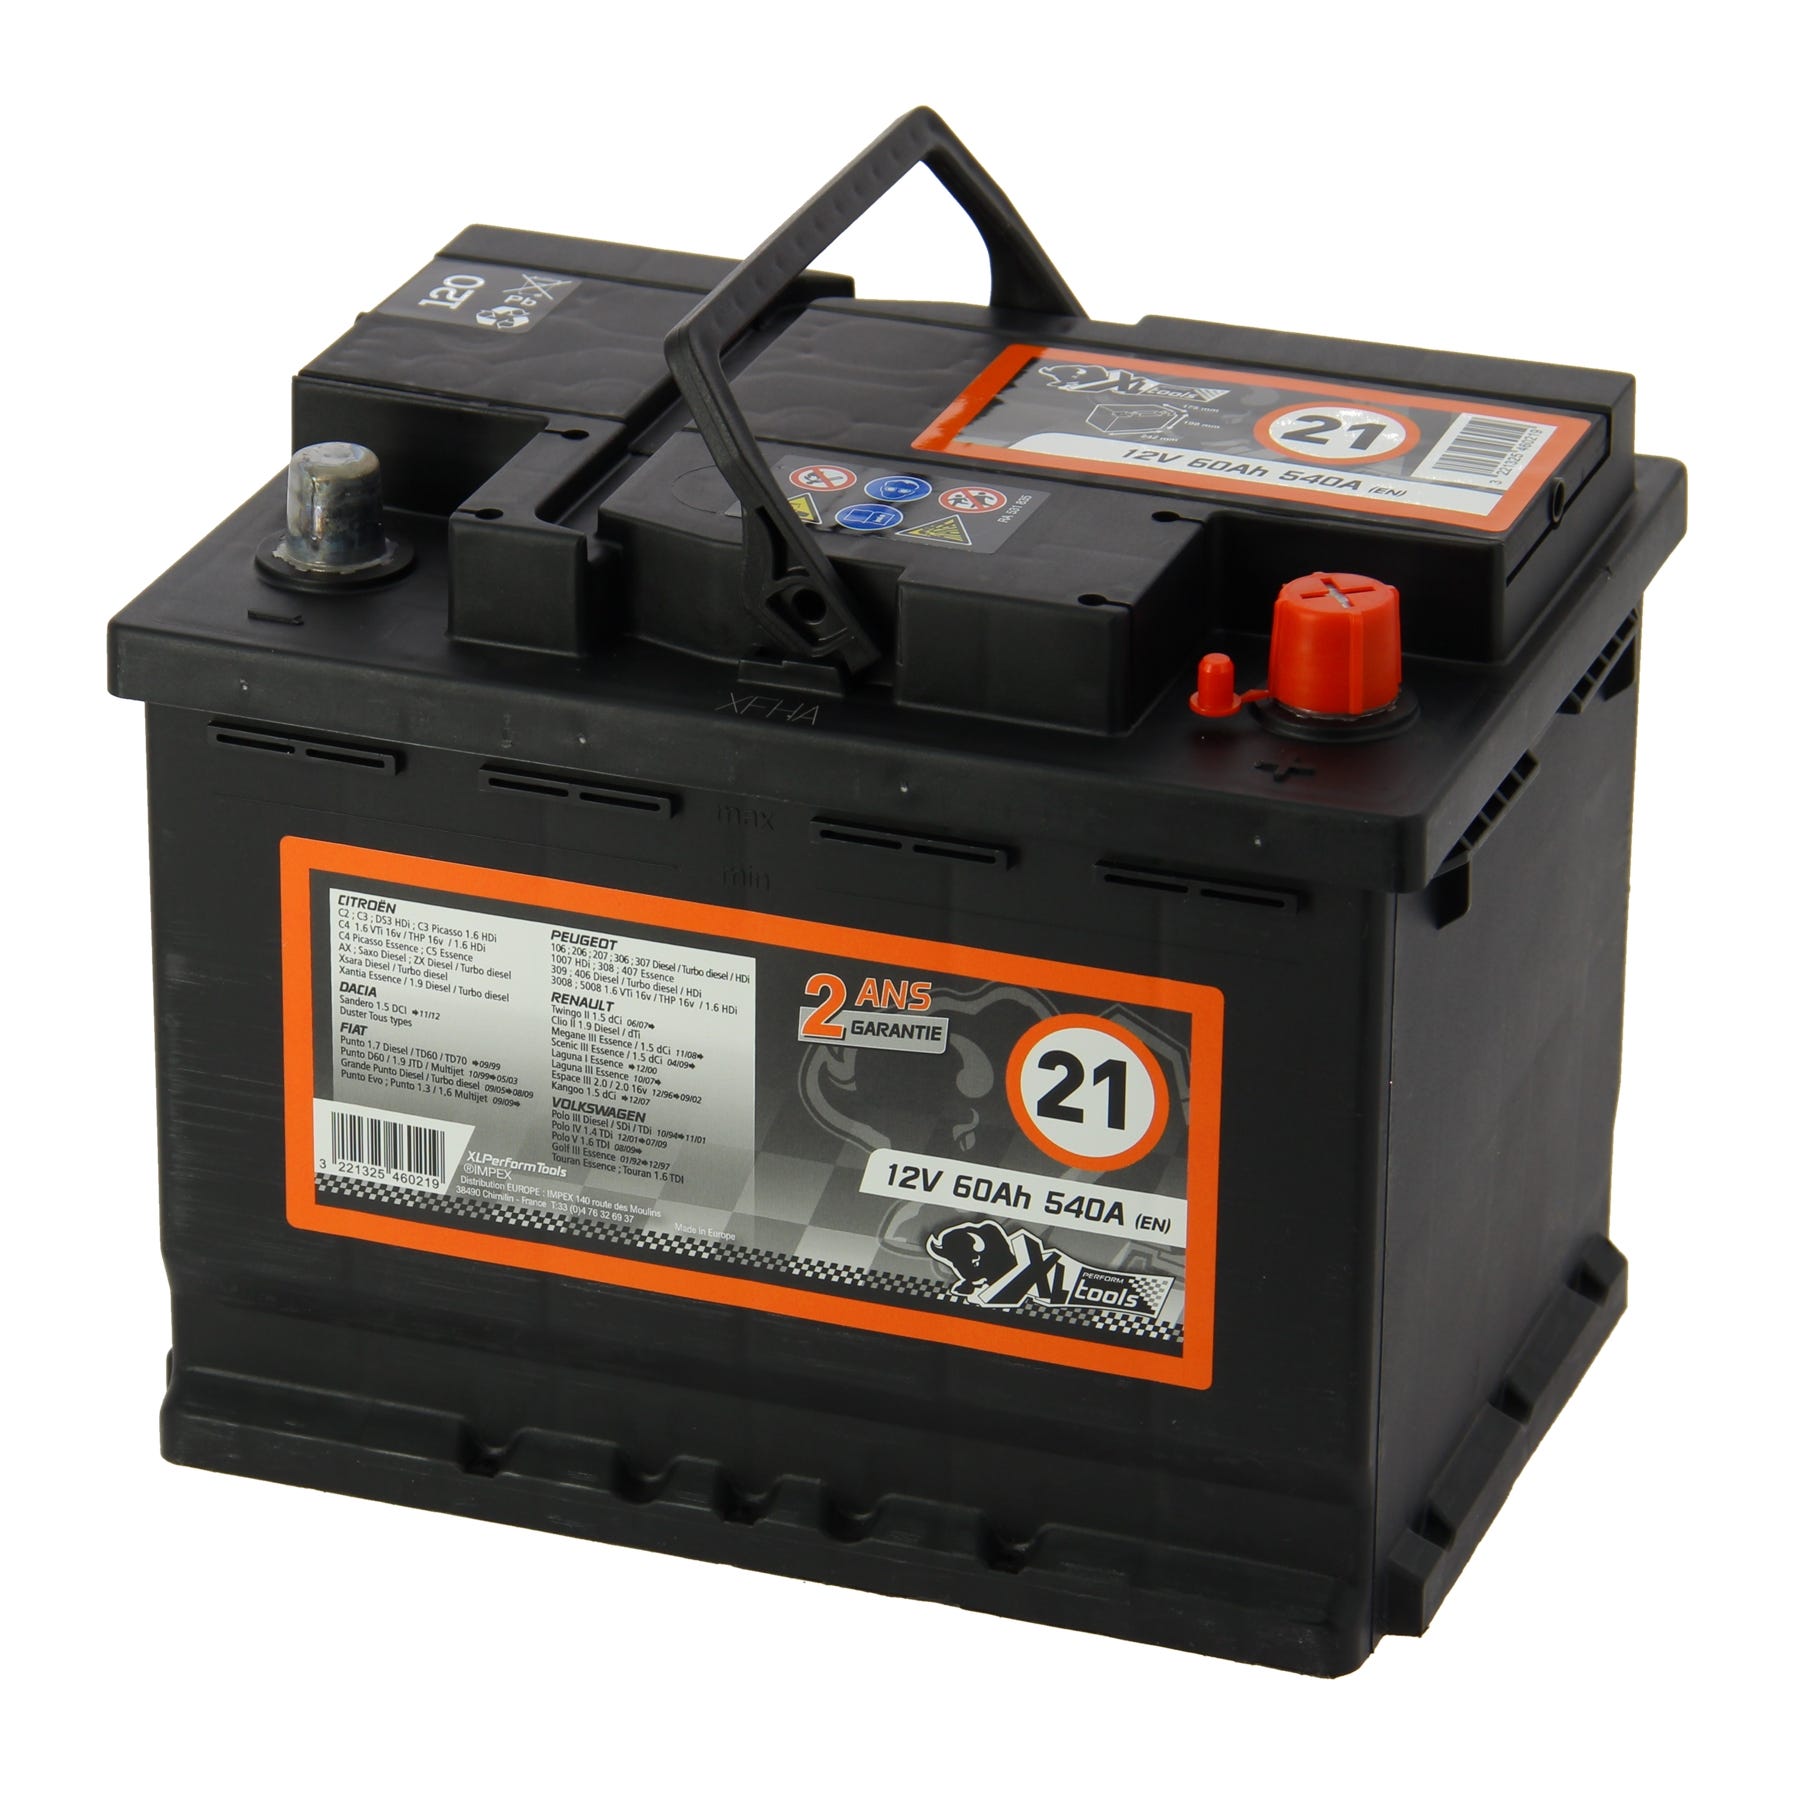 Batterie 12v 60Ah 640A - Équipement auto